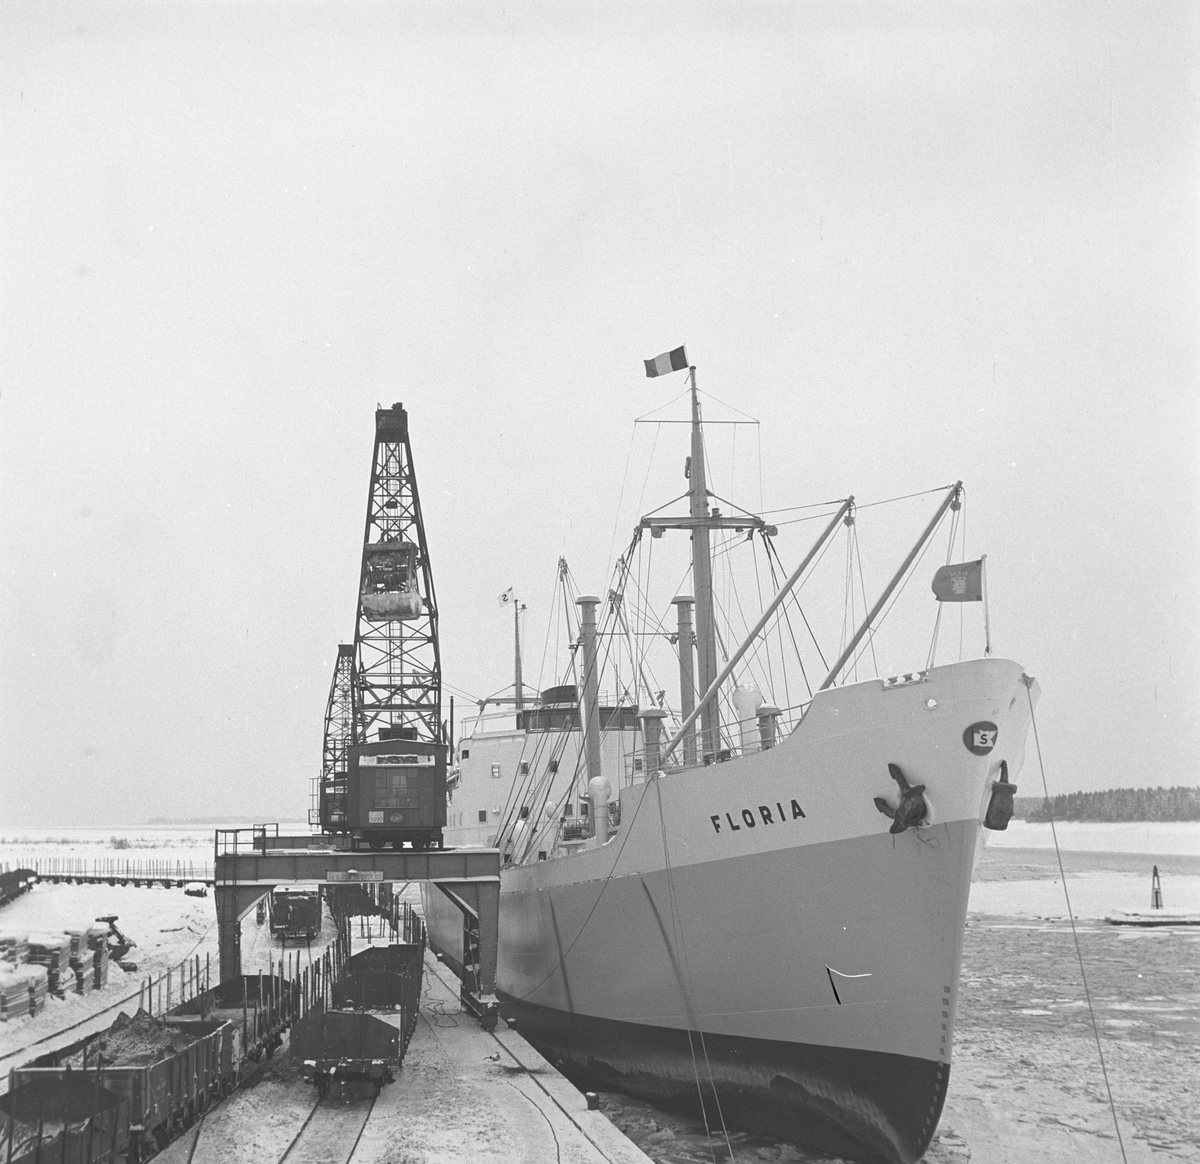 Fartyget "Floria"

10 januari 1950